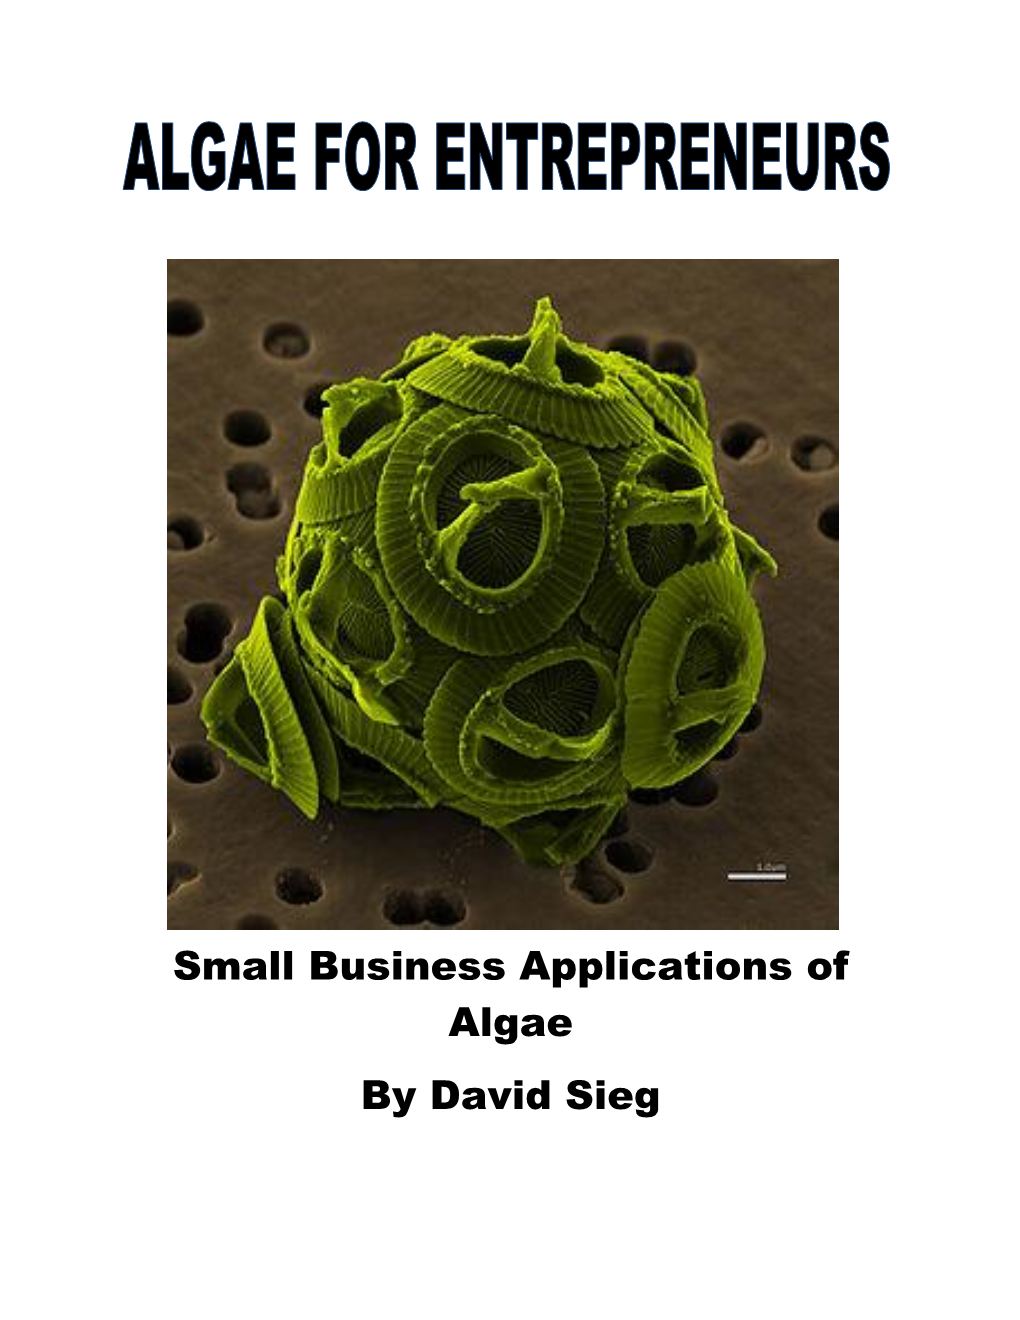 Algae for Entrepreneurs by David Sieg